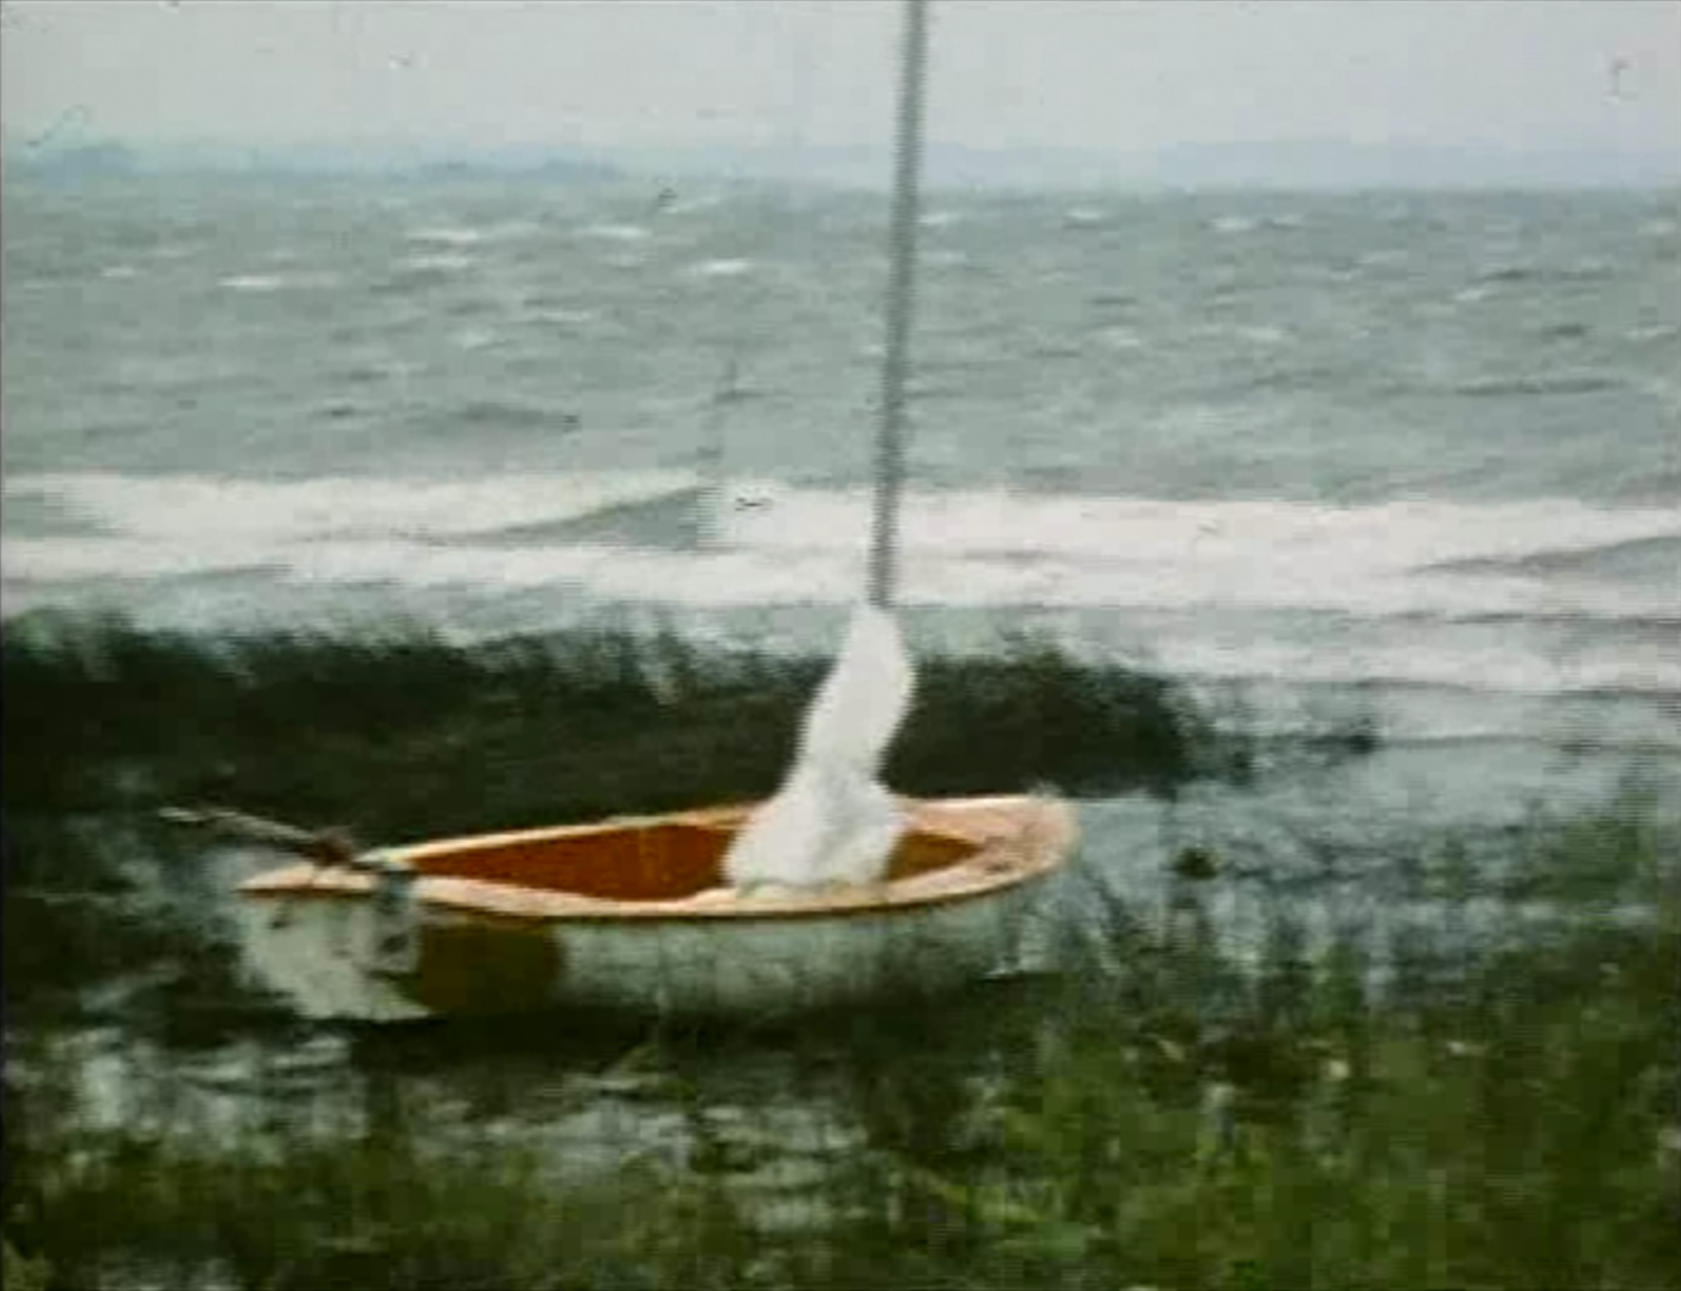 Unser kleines Segelboot - Originalaufnahme aus dem Urlaubsfilm von 1982